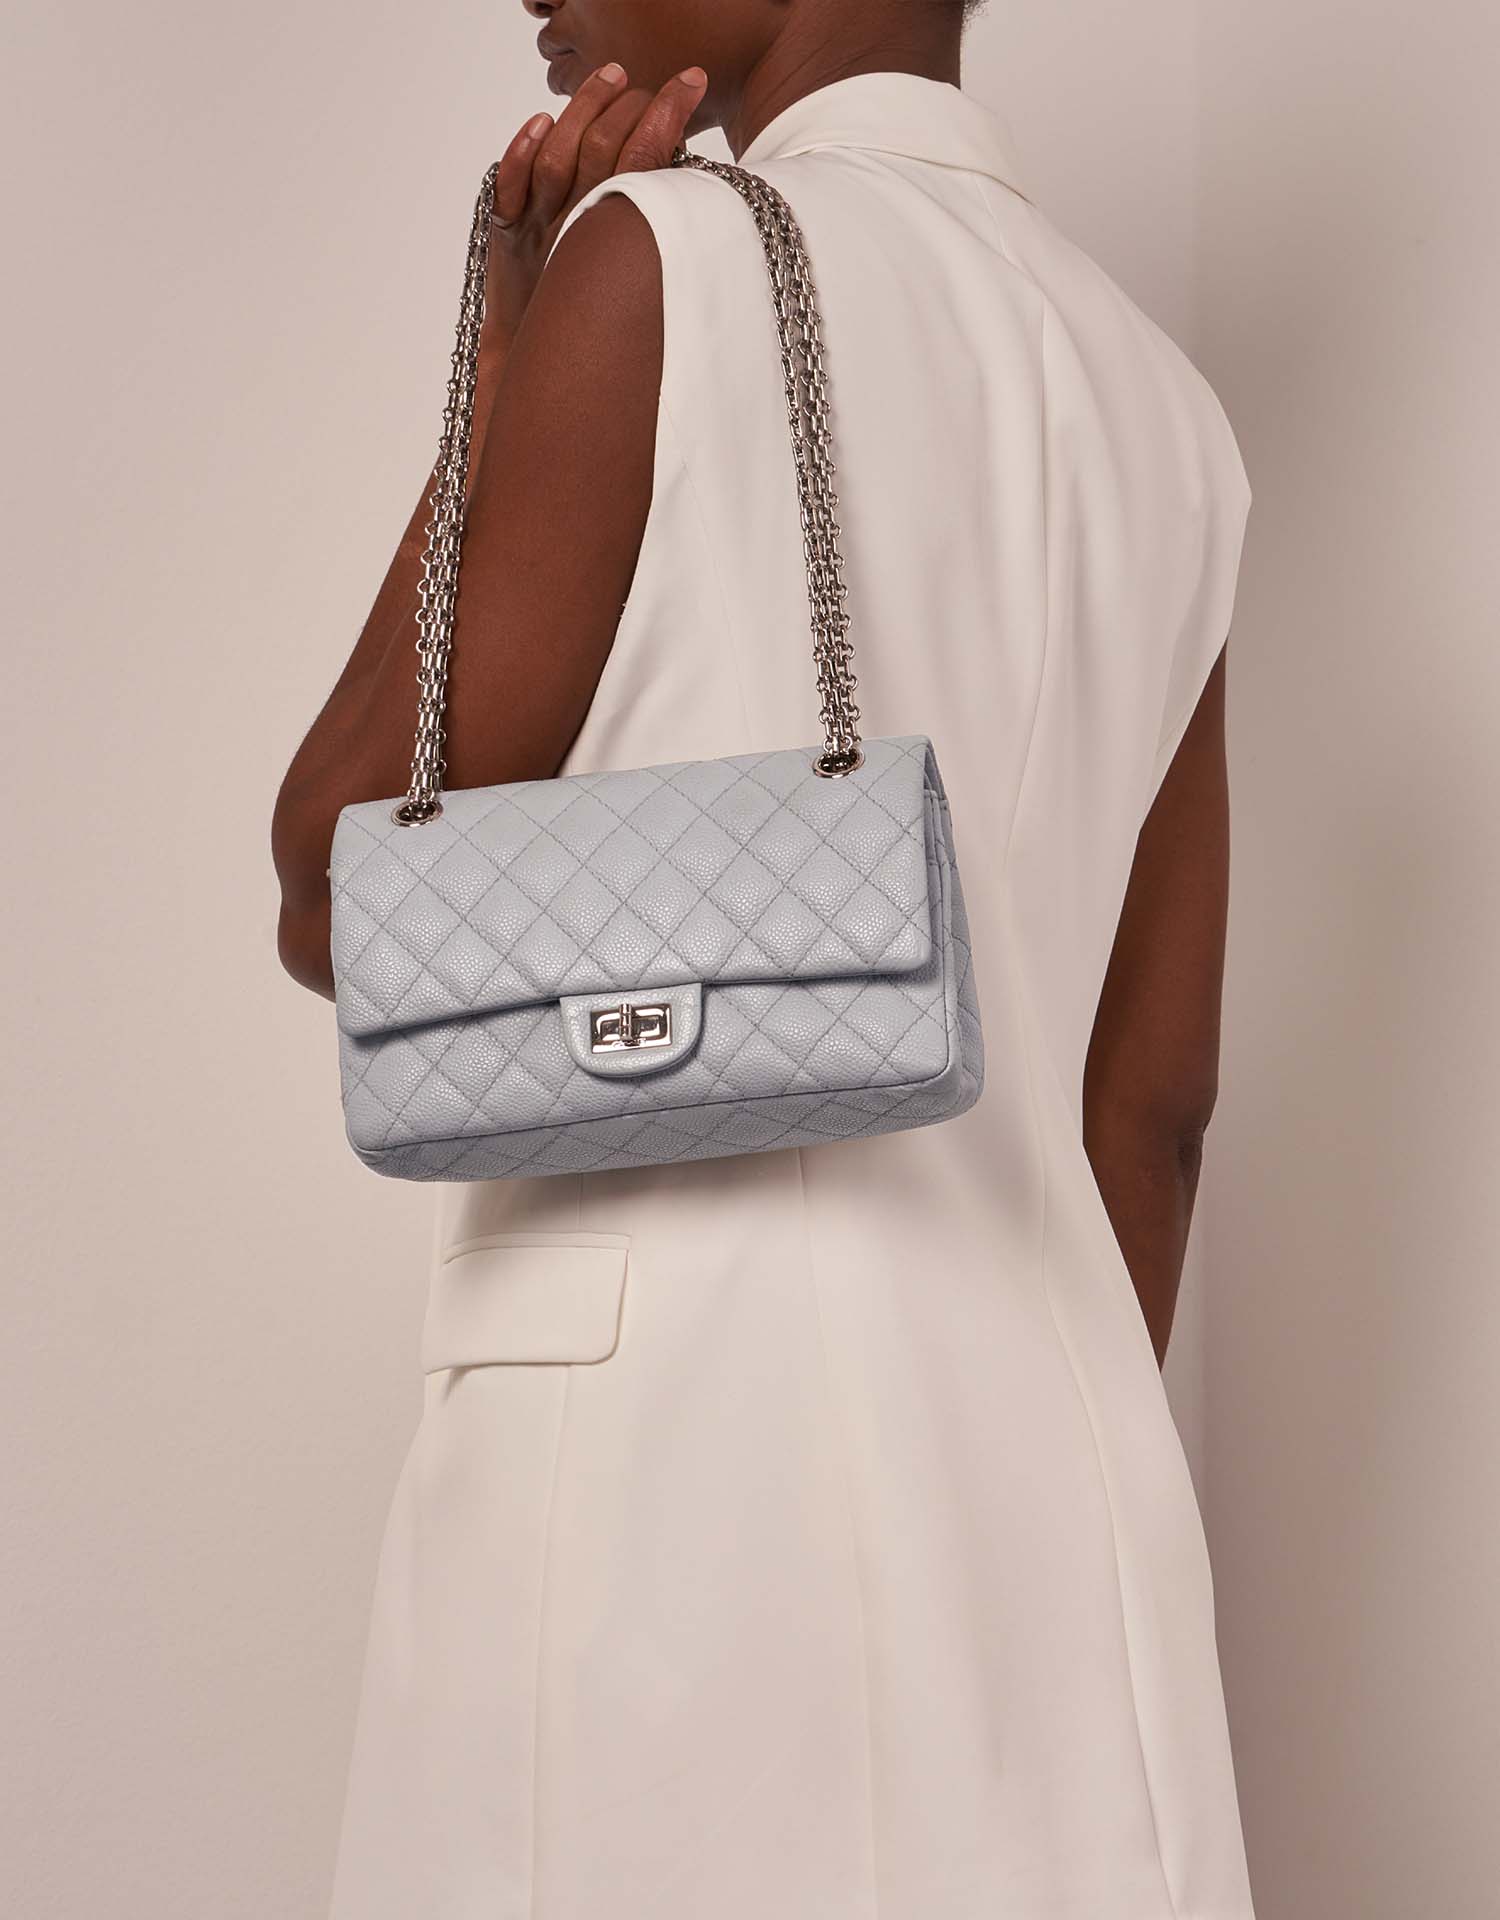 Chanel 255Reissue 225 LightBlue Größen Getragen | Verkaufen Sie Ihre Designer-Tasche auf Saclab.com